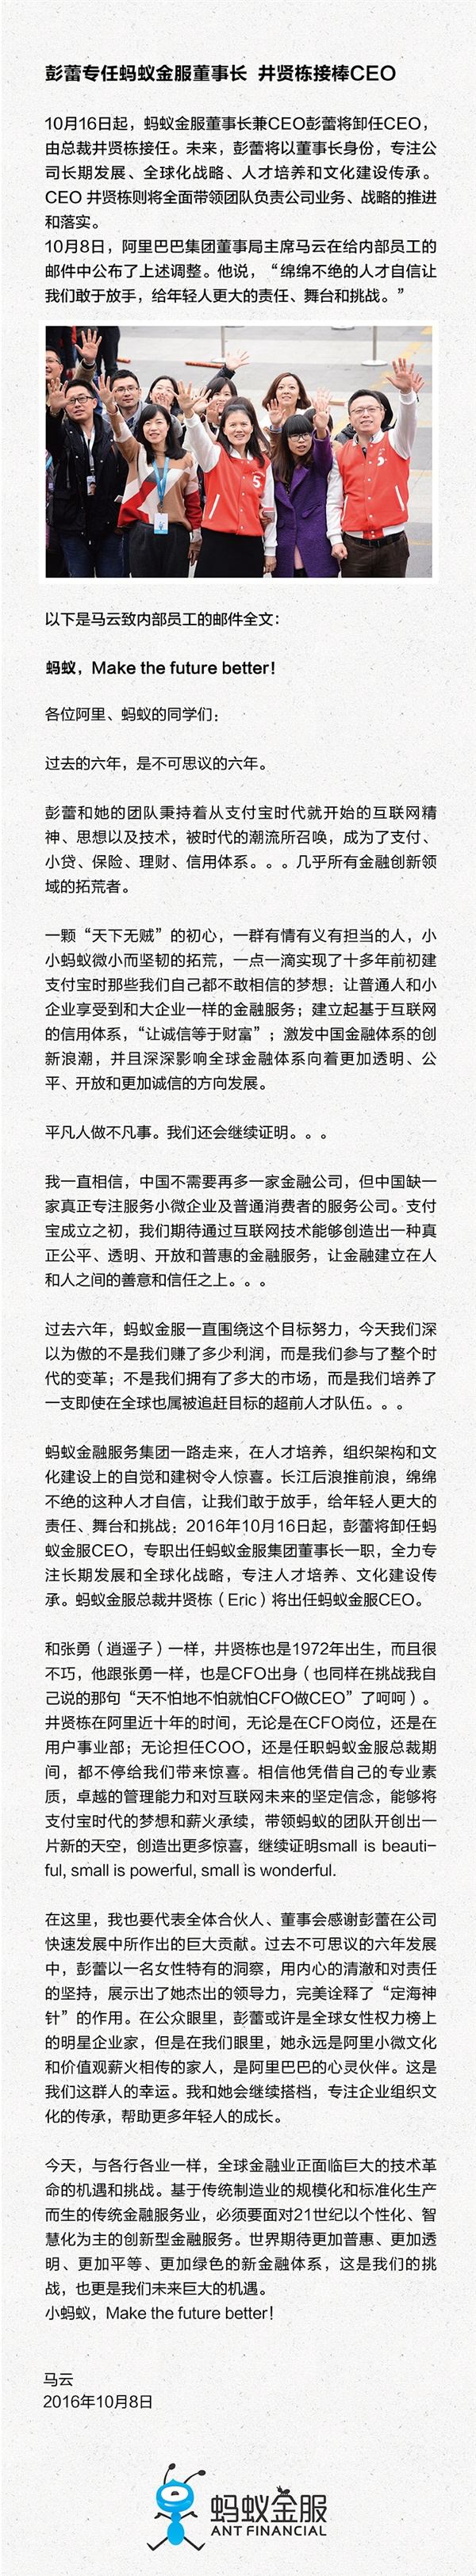 马云宣布彭蕾卸任蚂蚁金服CEO 由总裁井贤栋接任